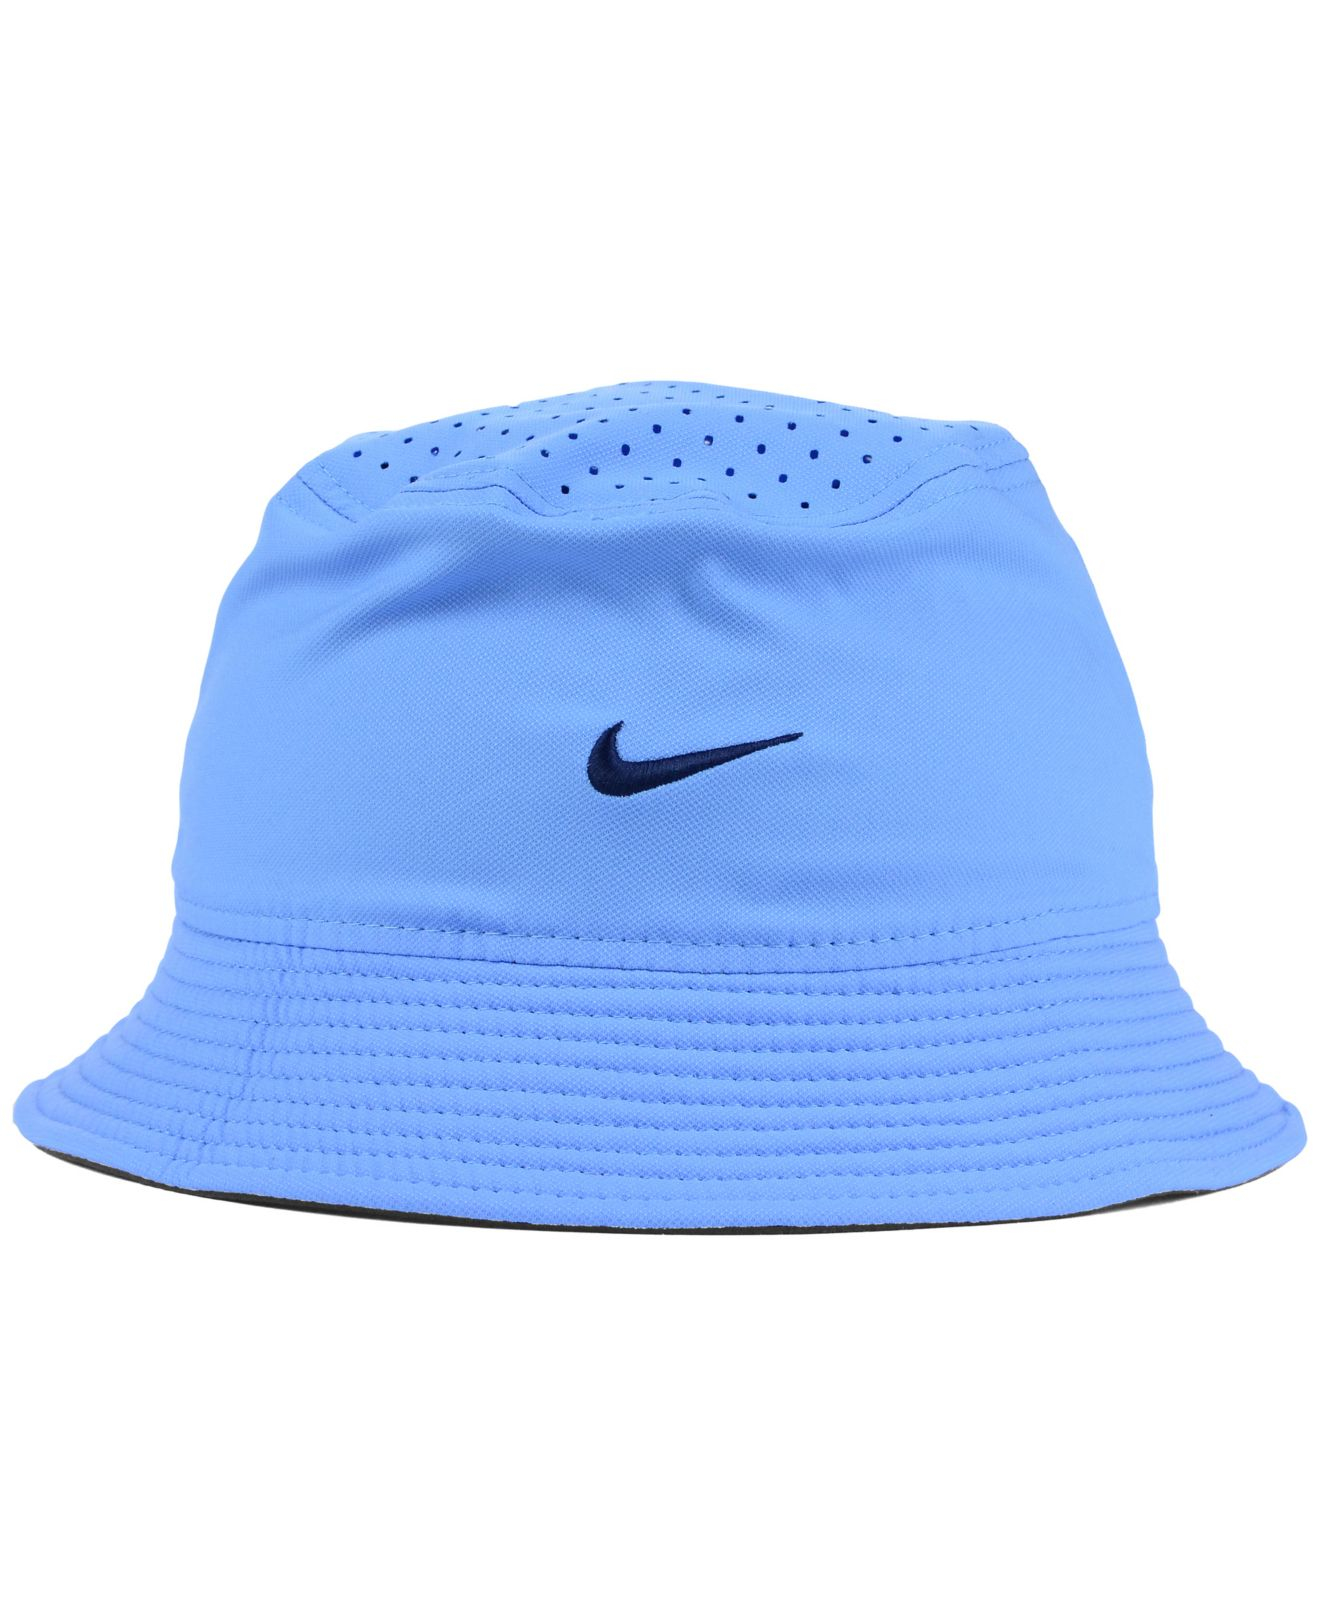 Lyst - Nike North Carolina Tar Heels Vapor Bucket Hat in Blue for Men